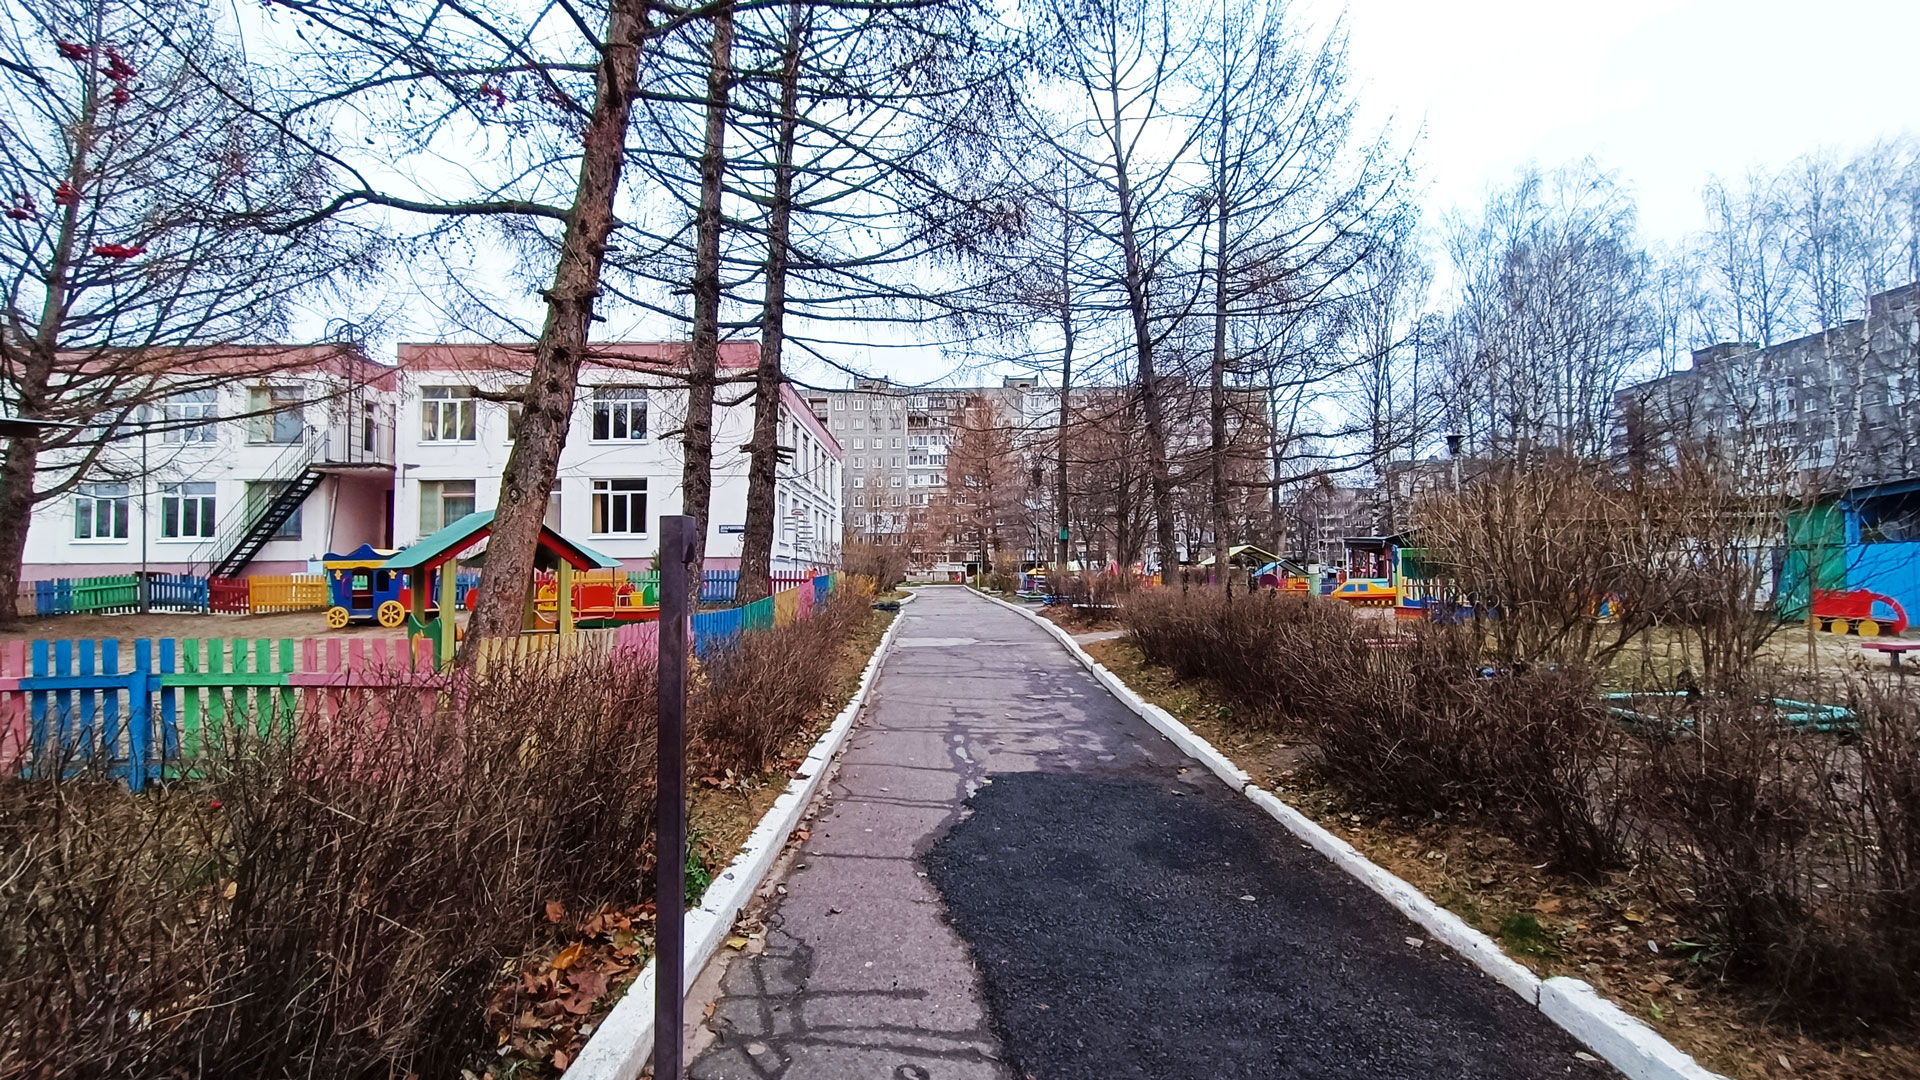 Детский сад 140 Ярославль: общий вид здания.